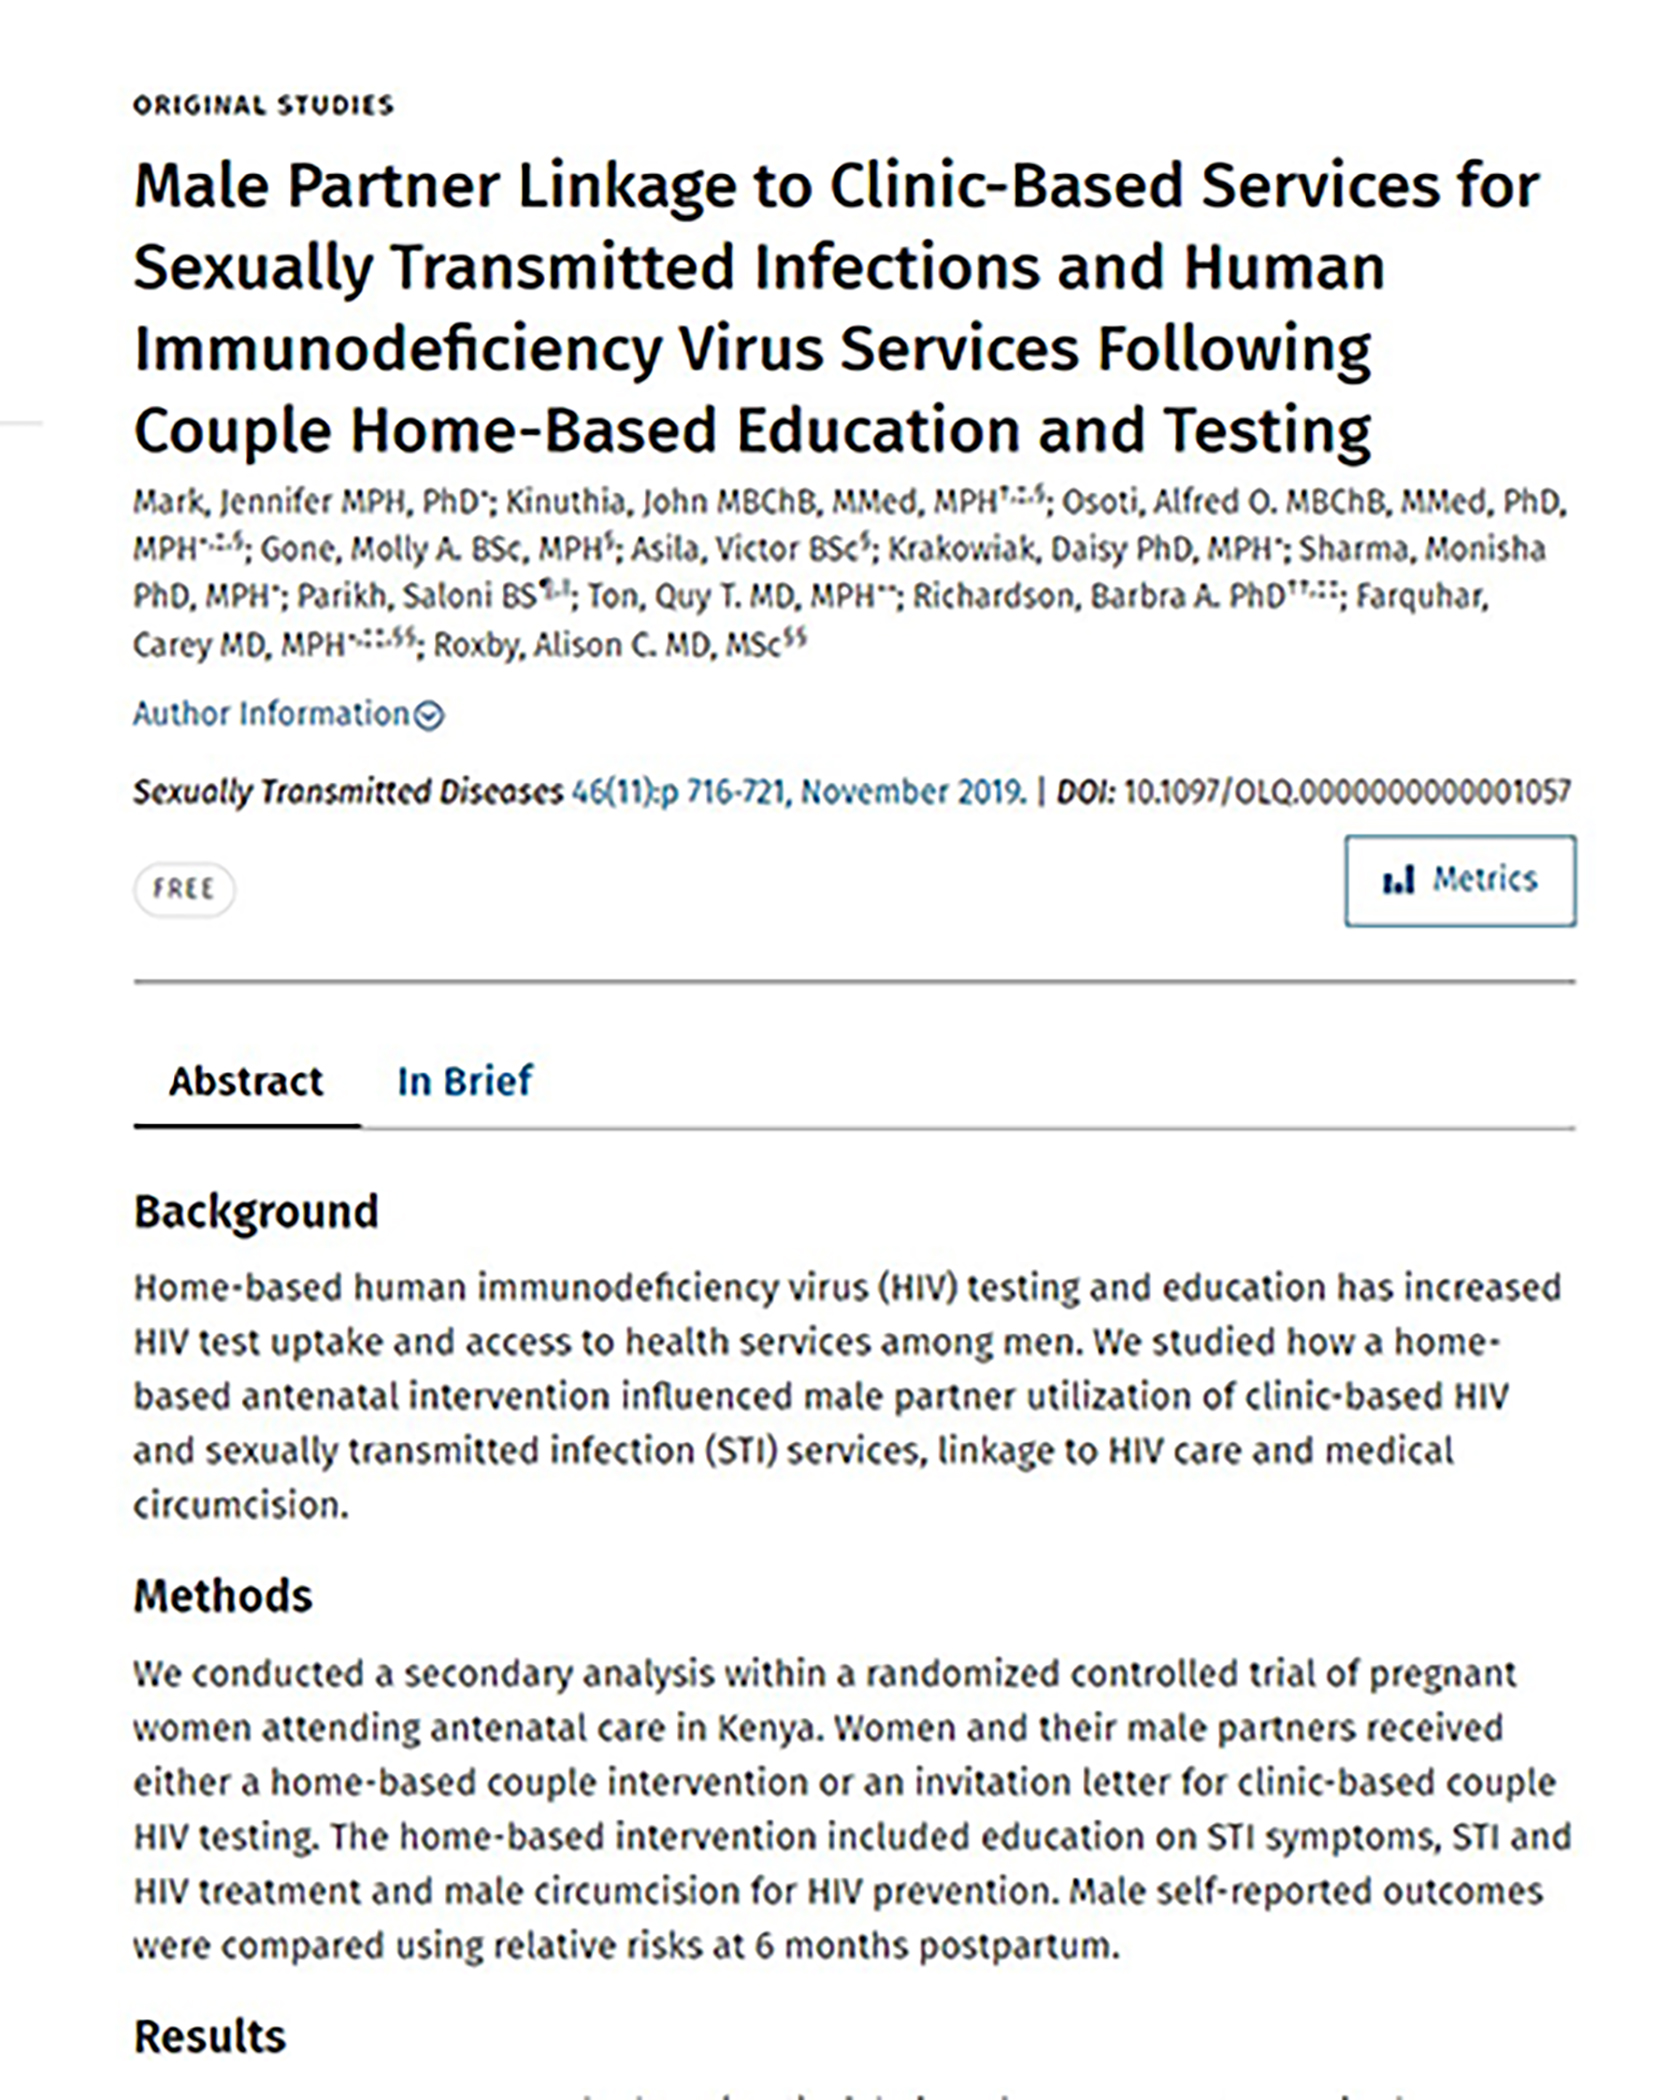 Vinculación de la pareja masculina a los servicios clínicos para las infecciones de transmisión sexual y el VIH - portada